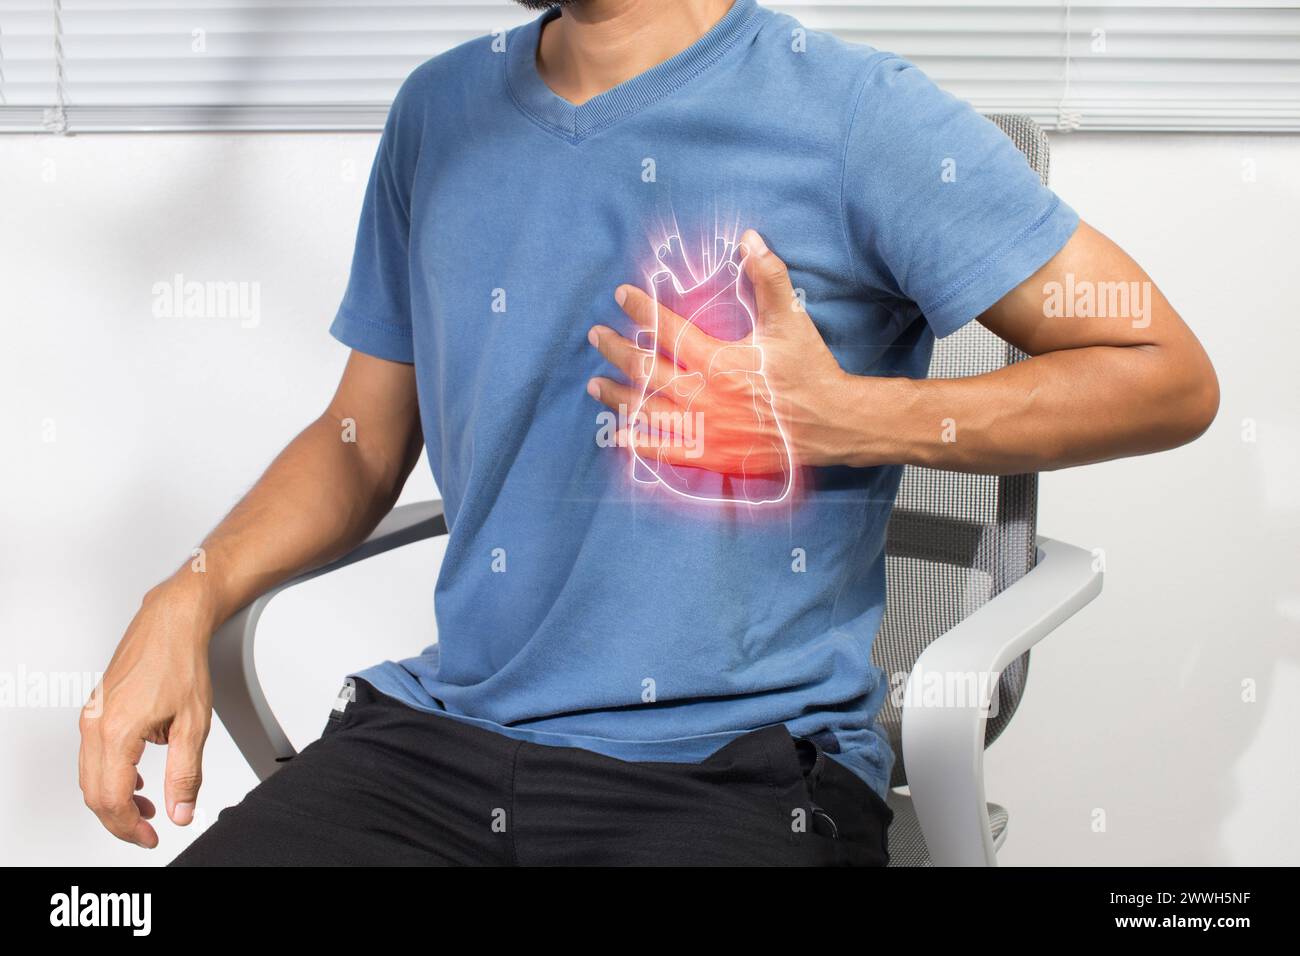 Un homme asiatique a une oppression thoracique due à une crise cardiaque. Coronaropathie Banque D'Images